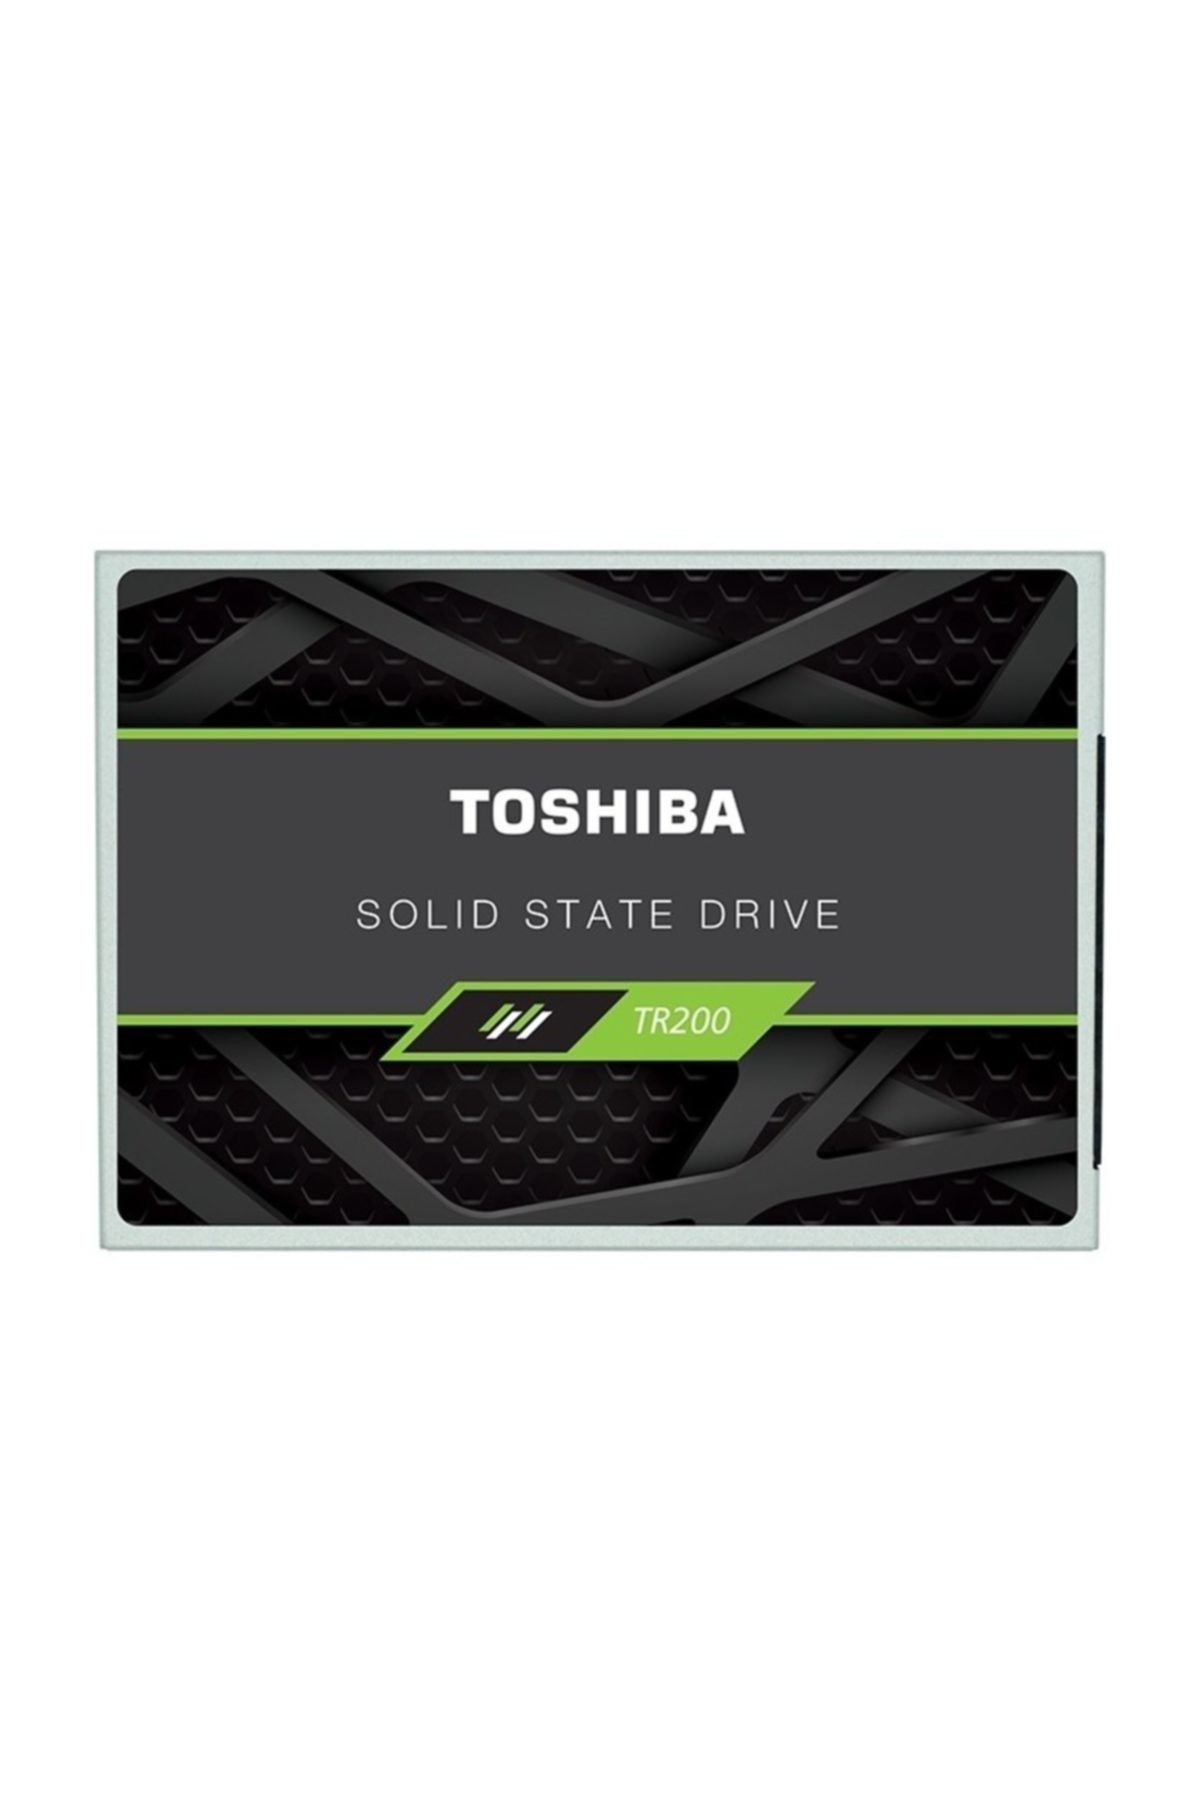 OCZ Toshiba Ocz 480GB SSD 555-540MB/sn SATA3 2.5'' SSD TR200-SAT3-480G